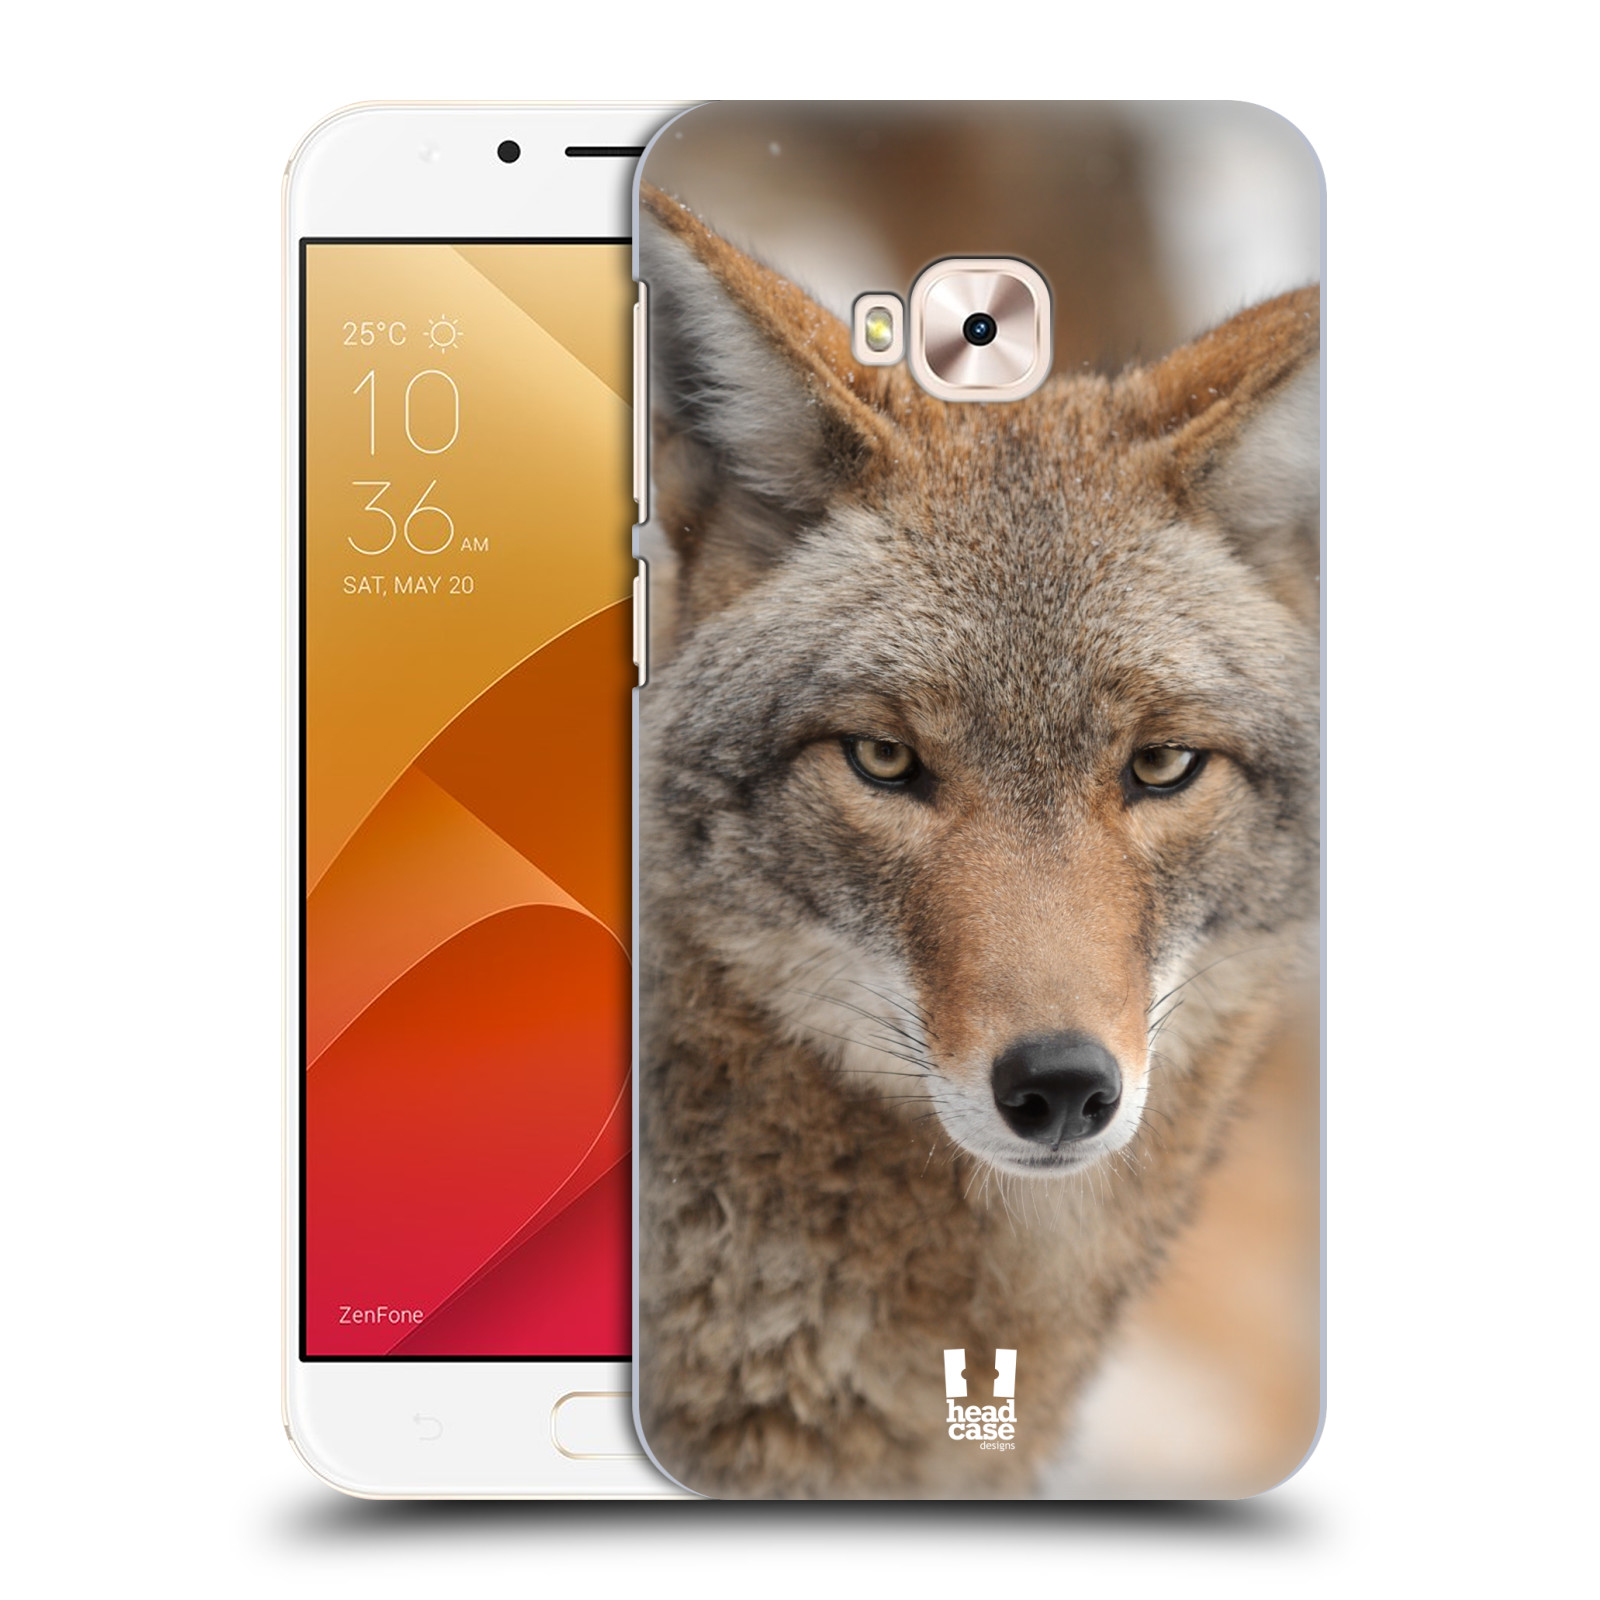 HEAD CASE plastový obal na mobil Asus Zenfone 4 Selfie Pro ZD552KL vzor slavná zvířata foto kojot